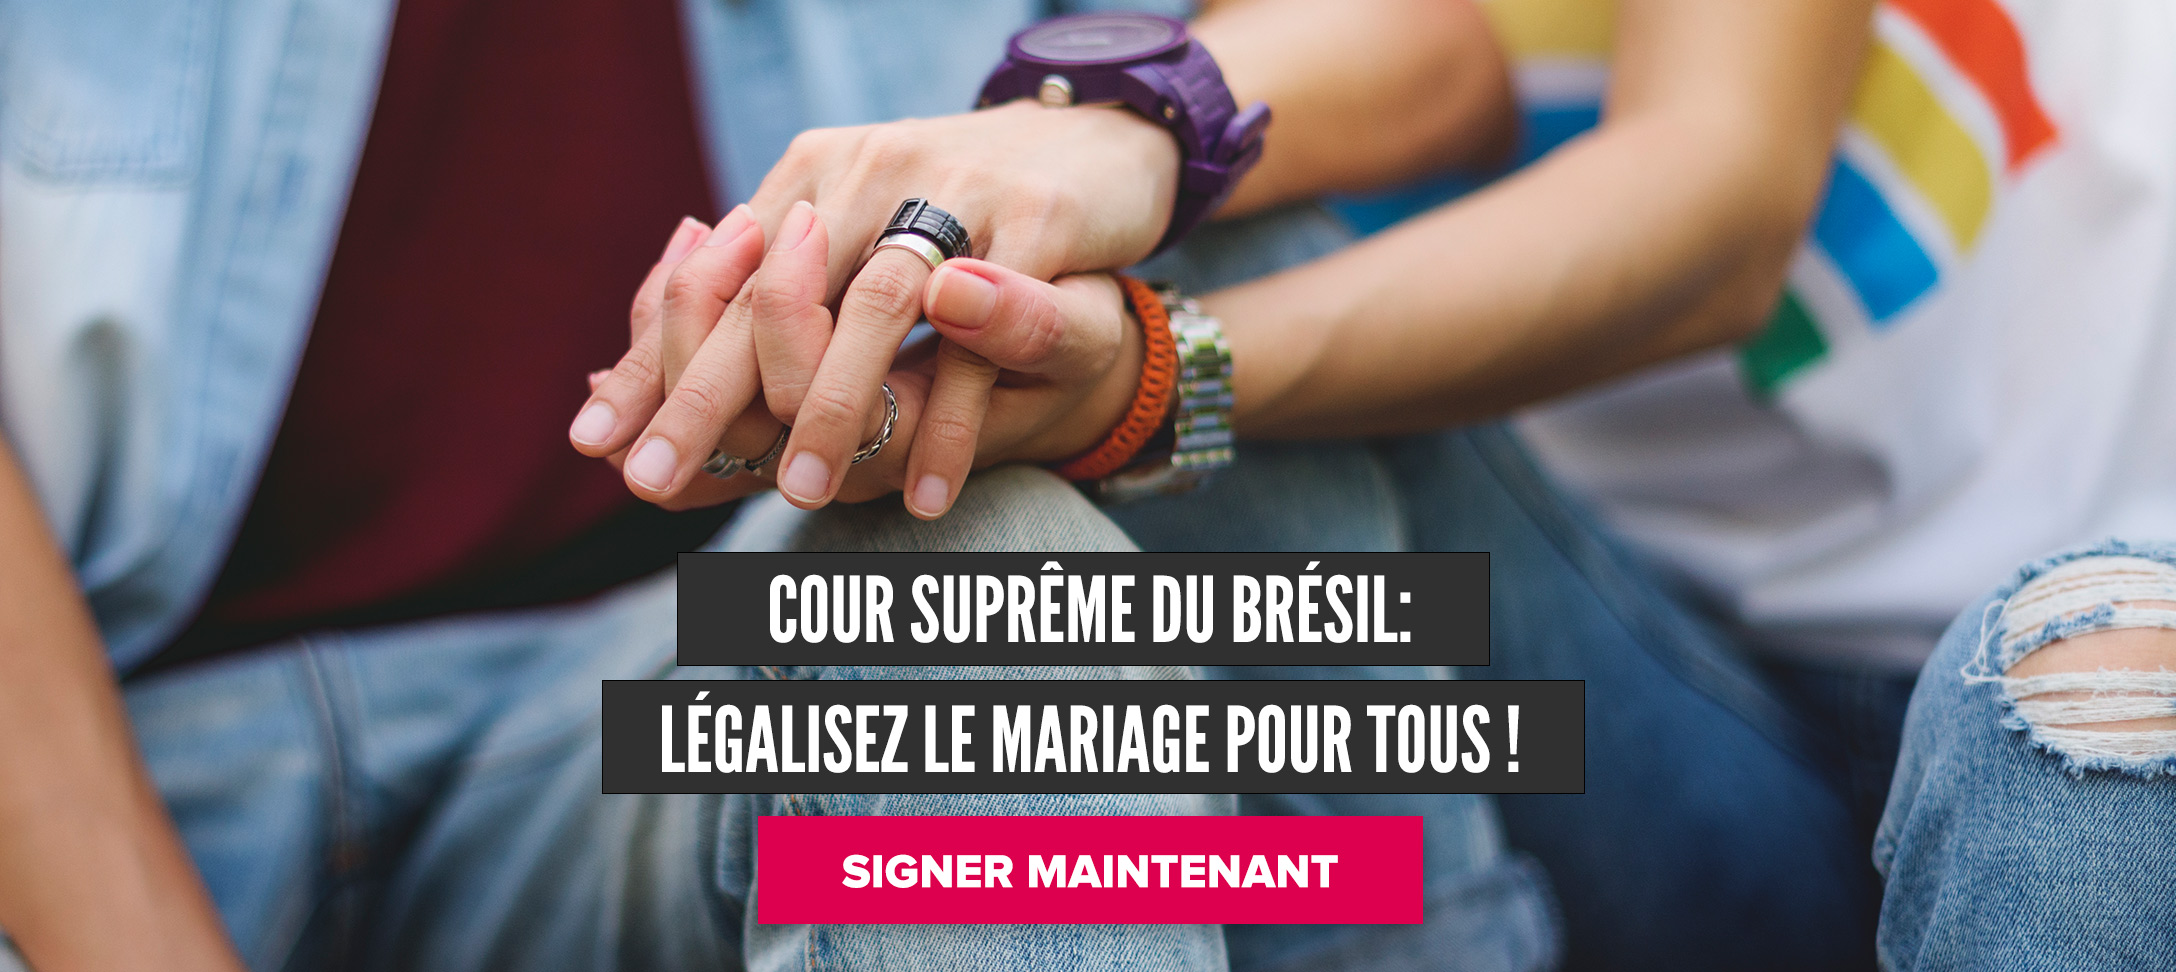 Cour suprême du Brésil : légalisez le mariage pour tous !